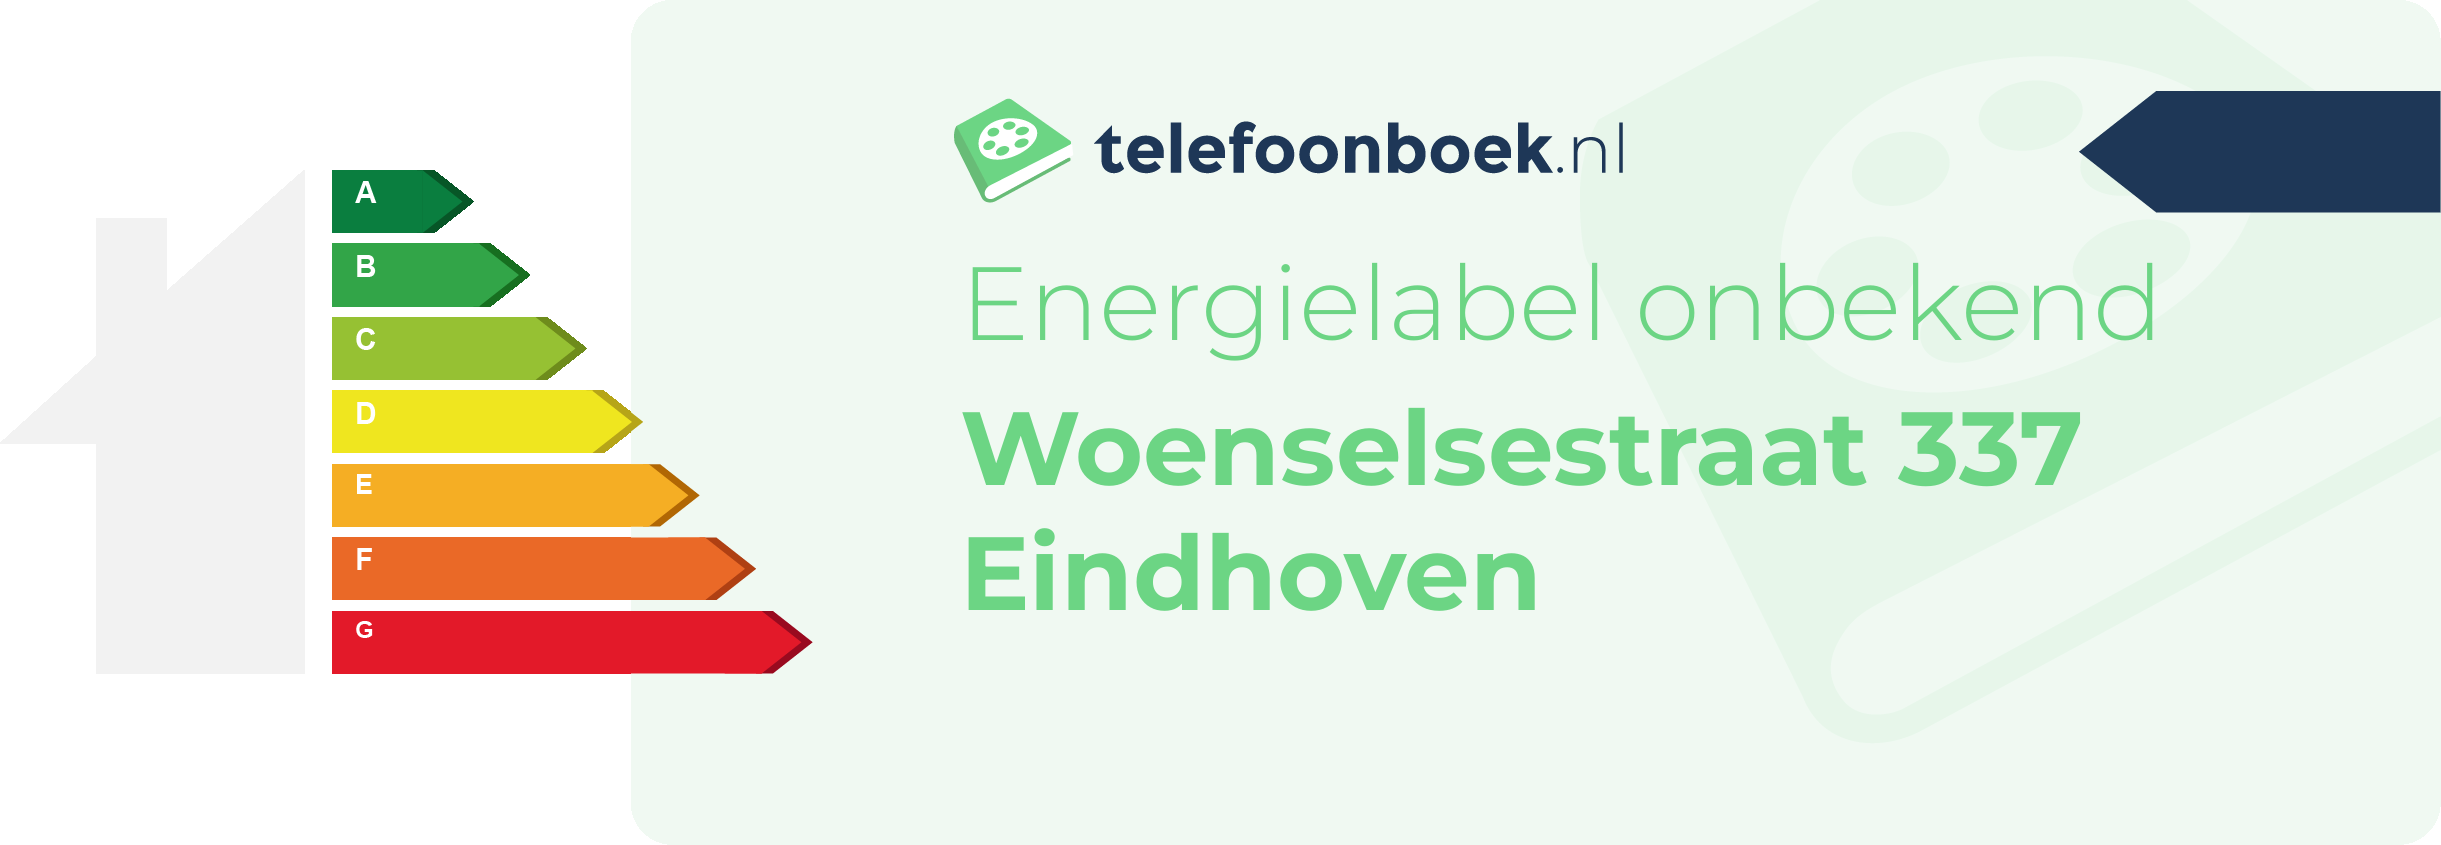 Energielabel Woenselsestraat 337 Eindhoven